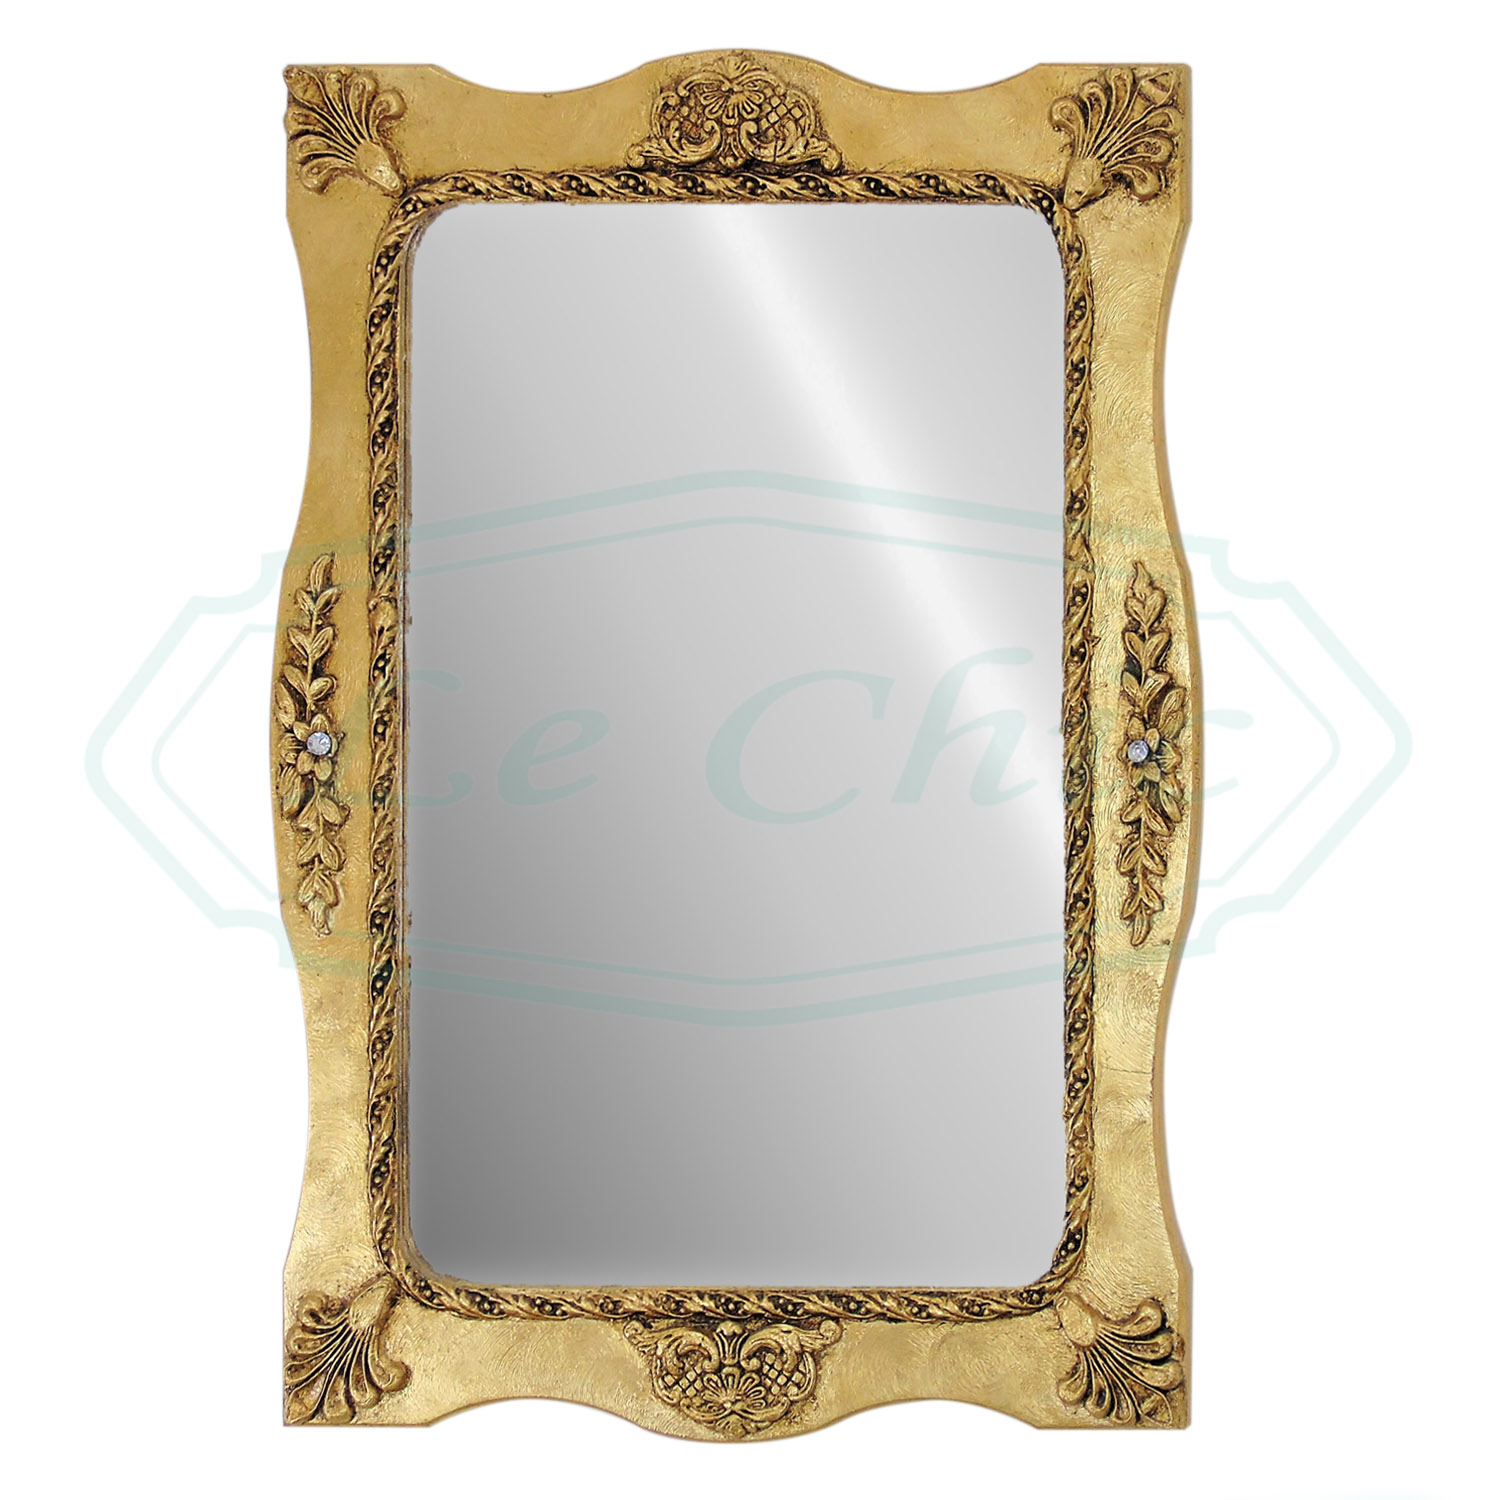 Specchio da parete design particolare metallo foglia oro - 1478